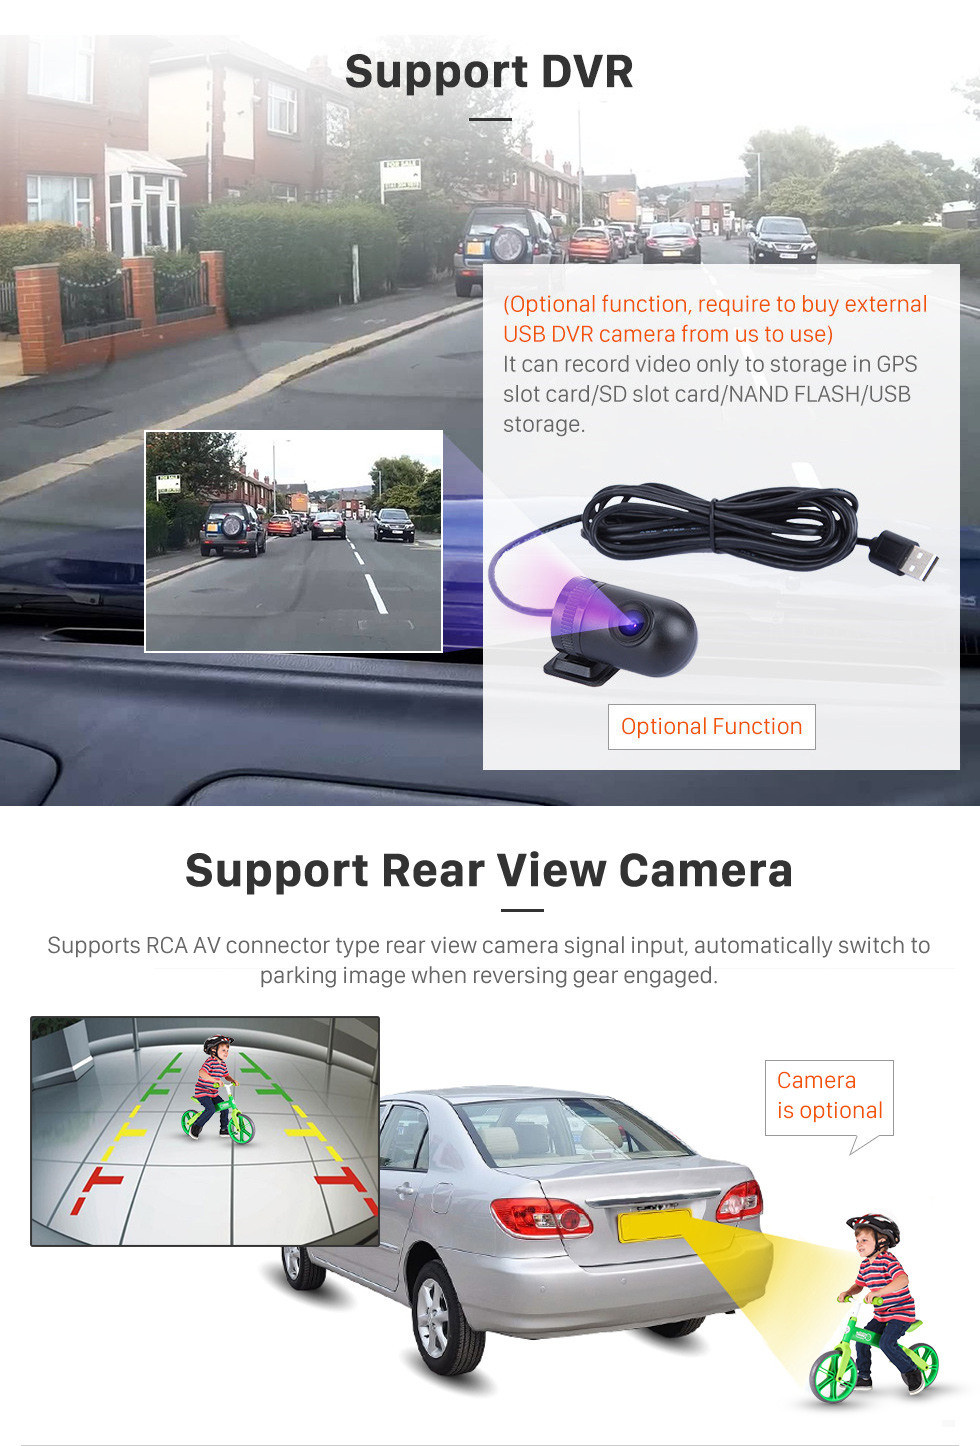 Seicane 9 pouces Android 11.0 2011-2016 Lifan X60 Radio au tableau de bord Bluetooth GPS Système audio de voiture Prise en charge WiFi 3G Lien miroir OBD2 Caméra de recul MP3 MP4 DVR AUX Lecteur DVD